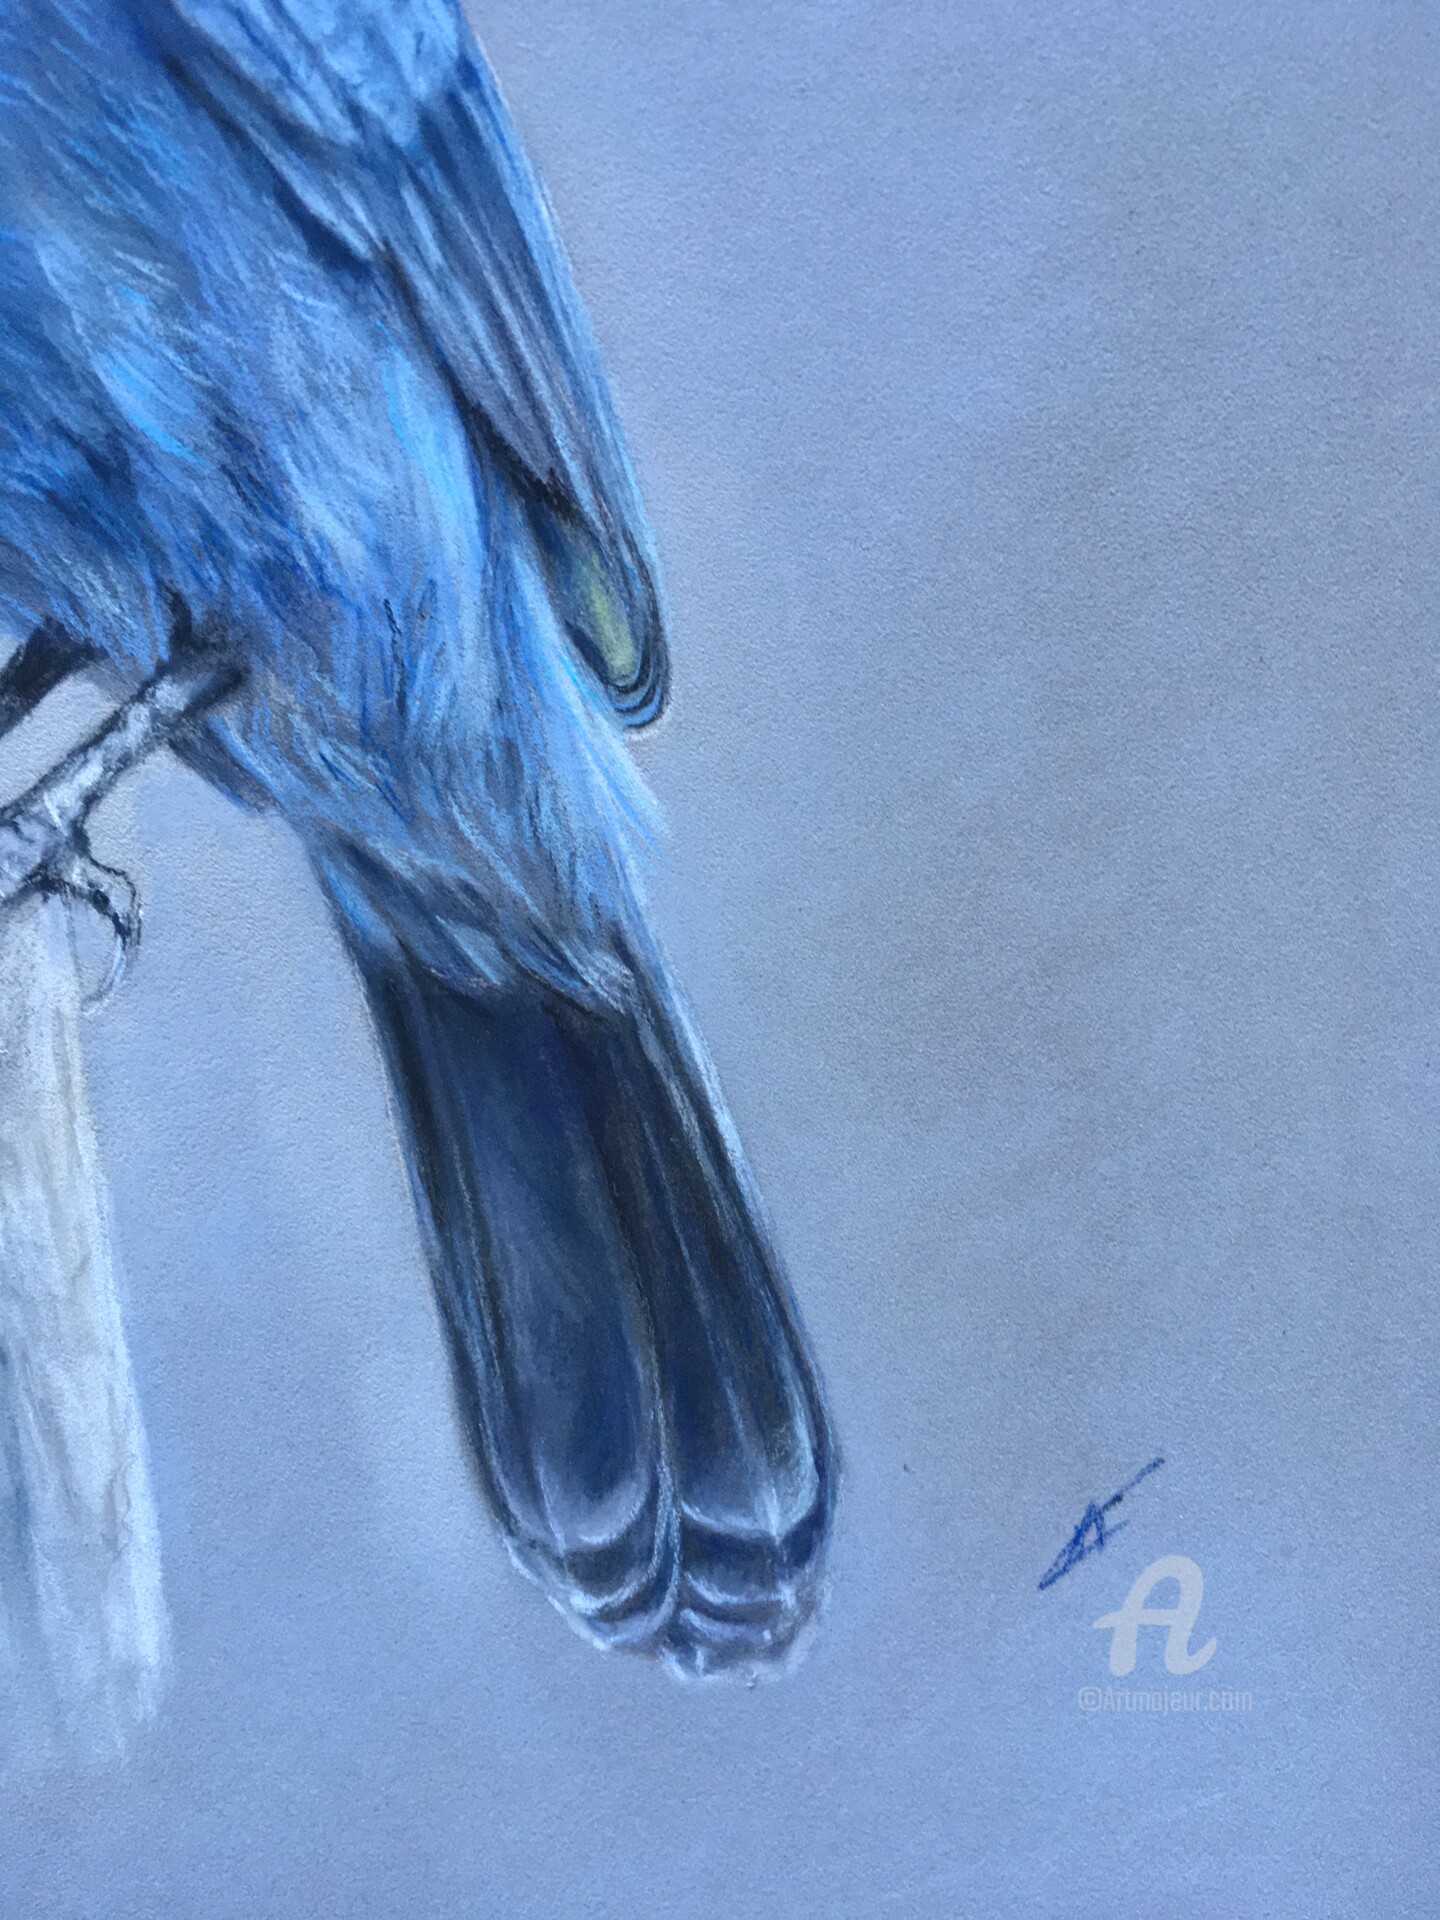 ZMHZMY Pittura Digitale Pittura Fai da Te Uccello Martin Pescatore Bluebird  Paint by Numbers Pittura a Olio Stampa Artistica da Parete Decorazione per